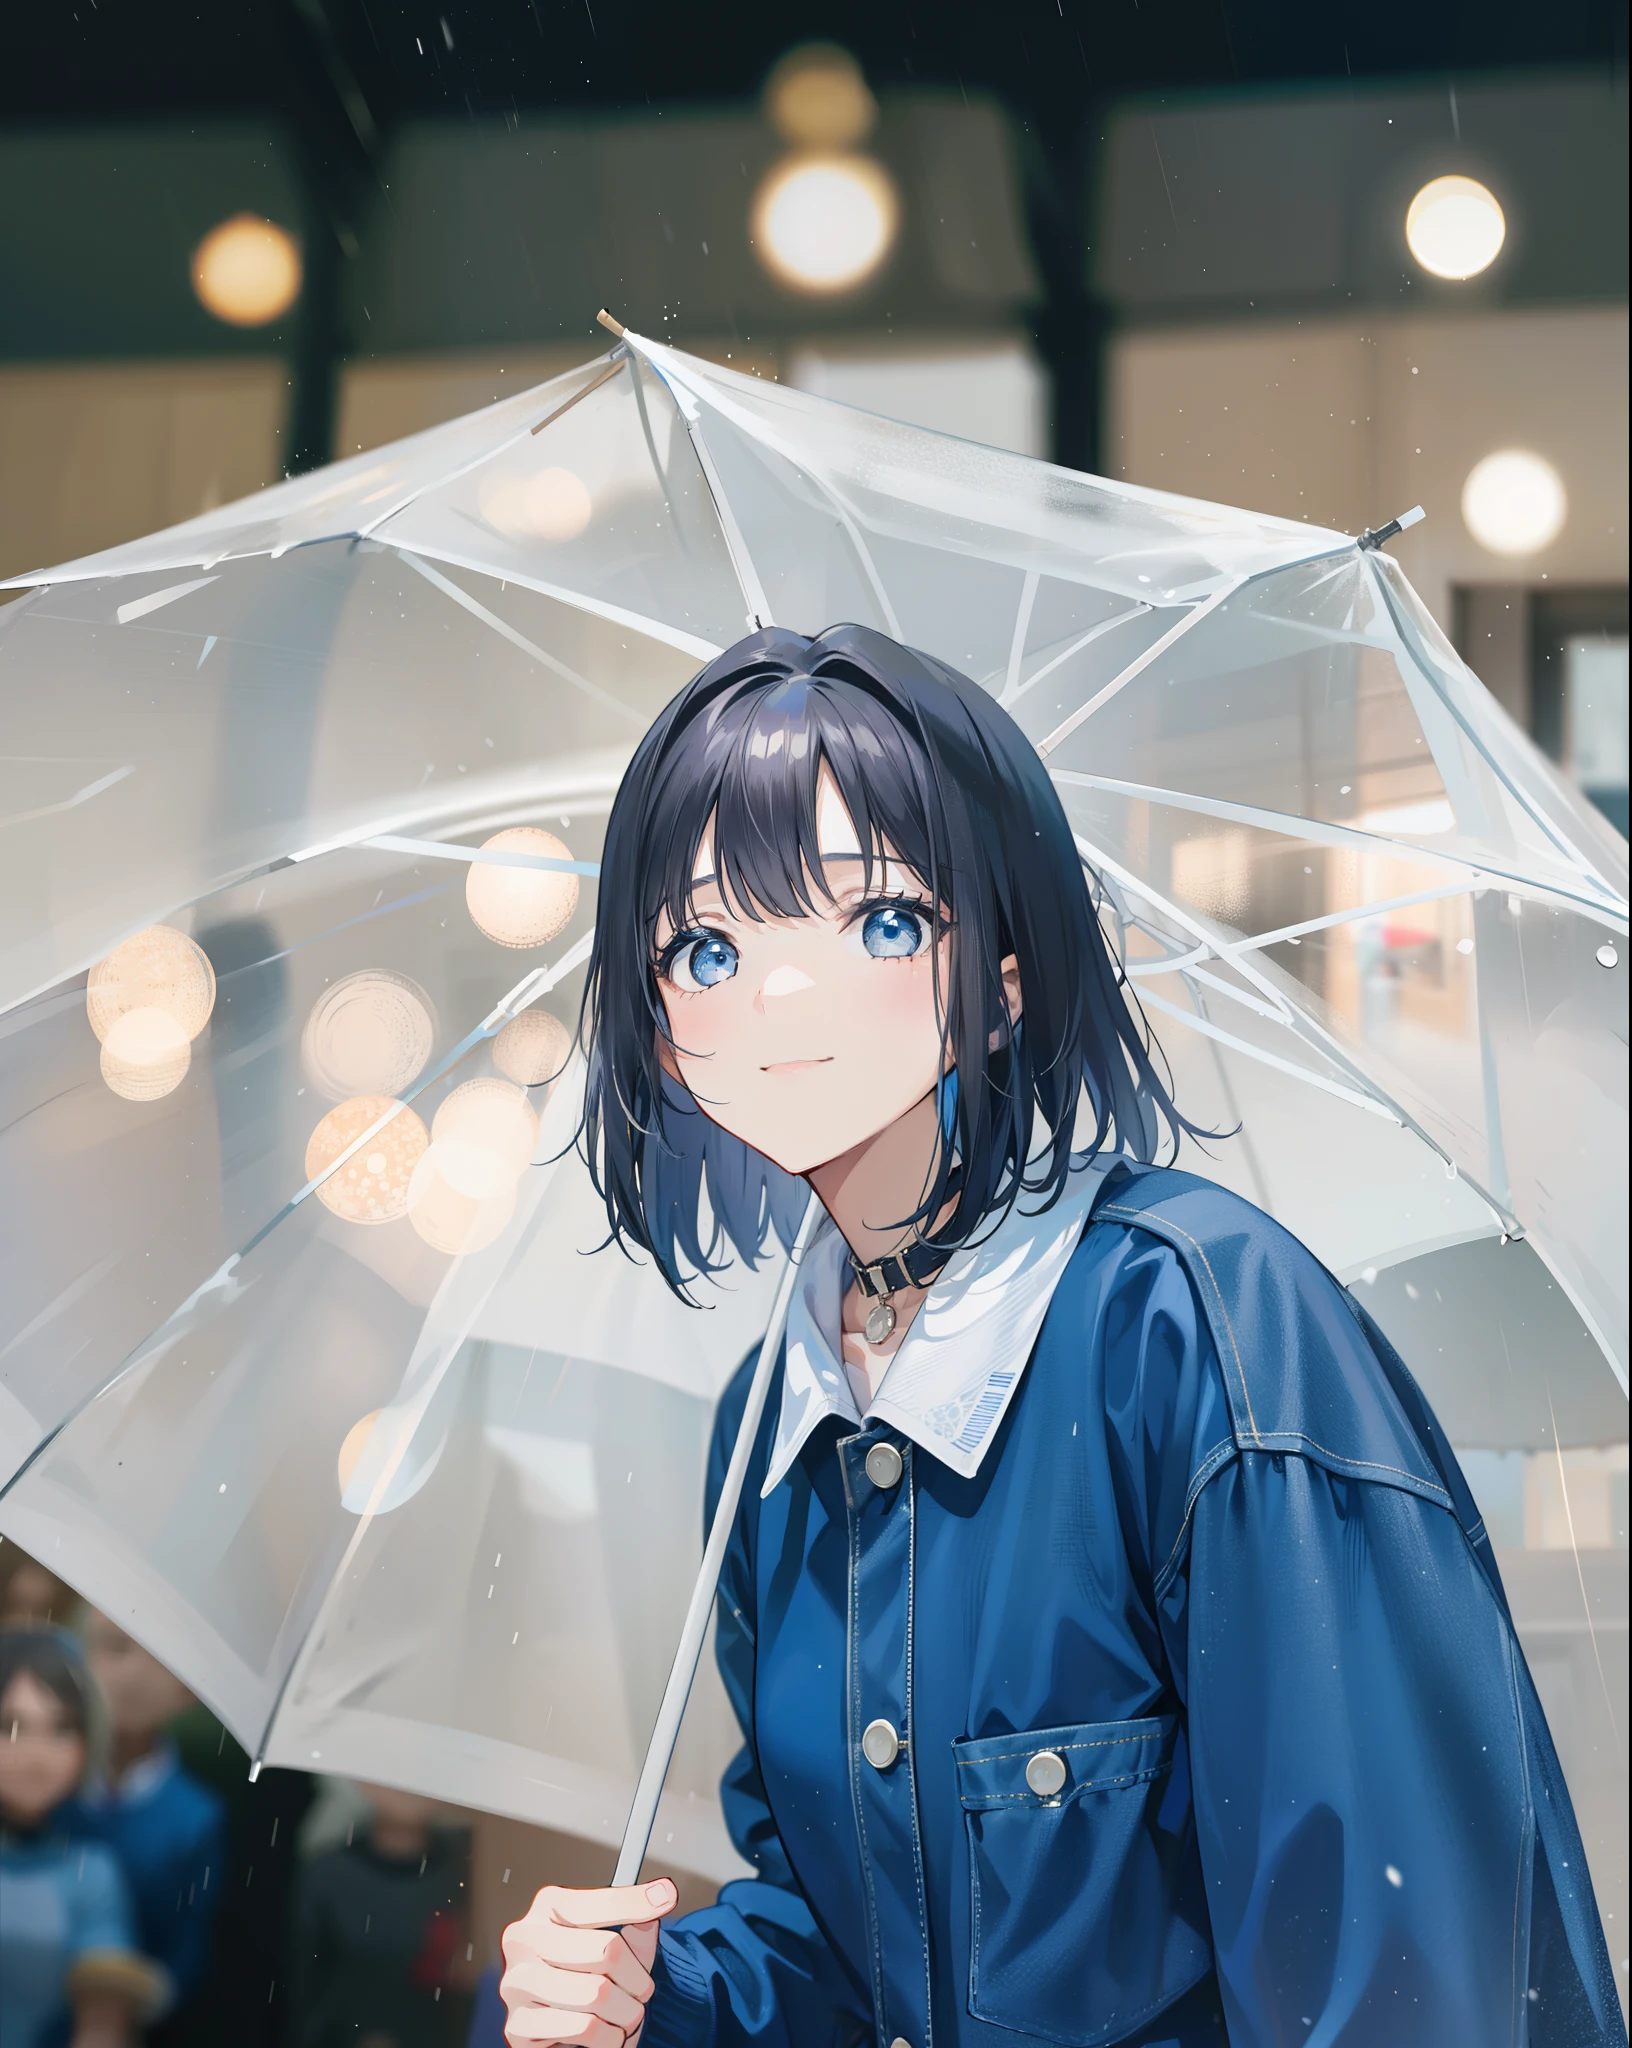 1名来自韩国的女孩, 短发刘海的漂亮女孩, 漂亮的眼睛, 尖鼻子和微笑, 穿着蓝色 Levis 夹克和浅黄色衣领, 撑着白色透明雨伞, 手里拿着伞, 面向观众, 模糊的背景, 中等天气 有雨